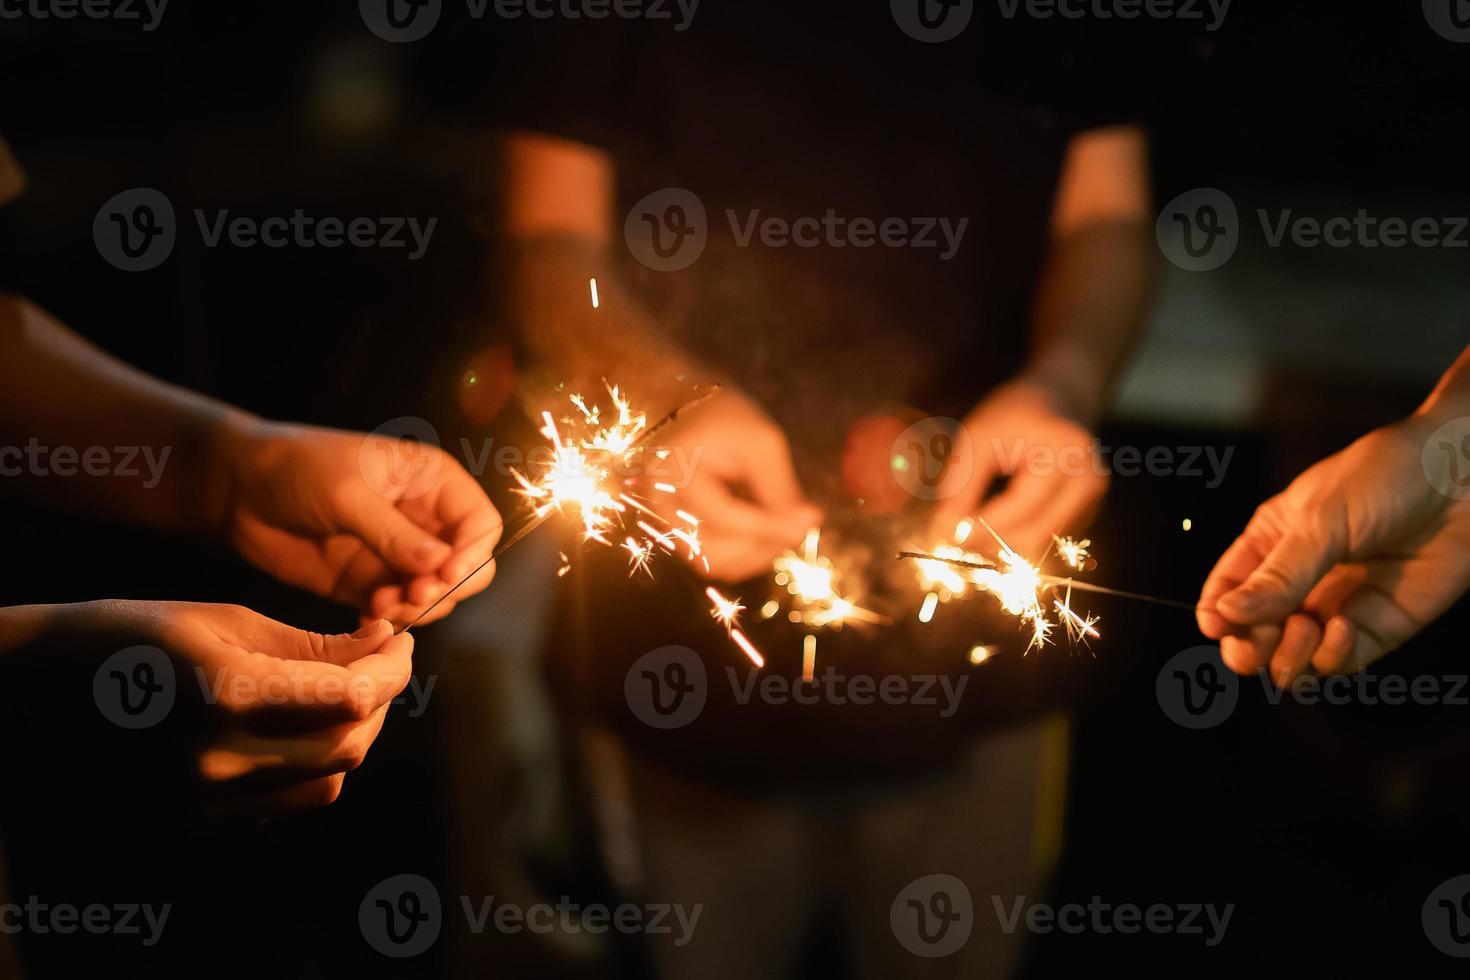 frohes neues jahr und frohe weihnachten gruppe von personen familie mit wunderkerze feuer beleuchtung konzept, hand hält eine brennende wunderkerze feuerwerk licht, nahaufnahme frauenhand mit funkeln dunkel. Neujahrskonzept. foto